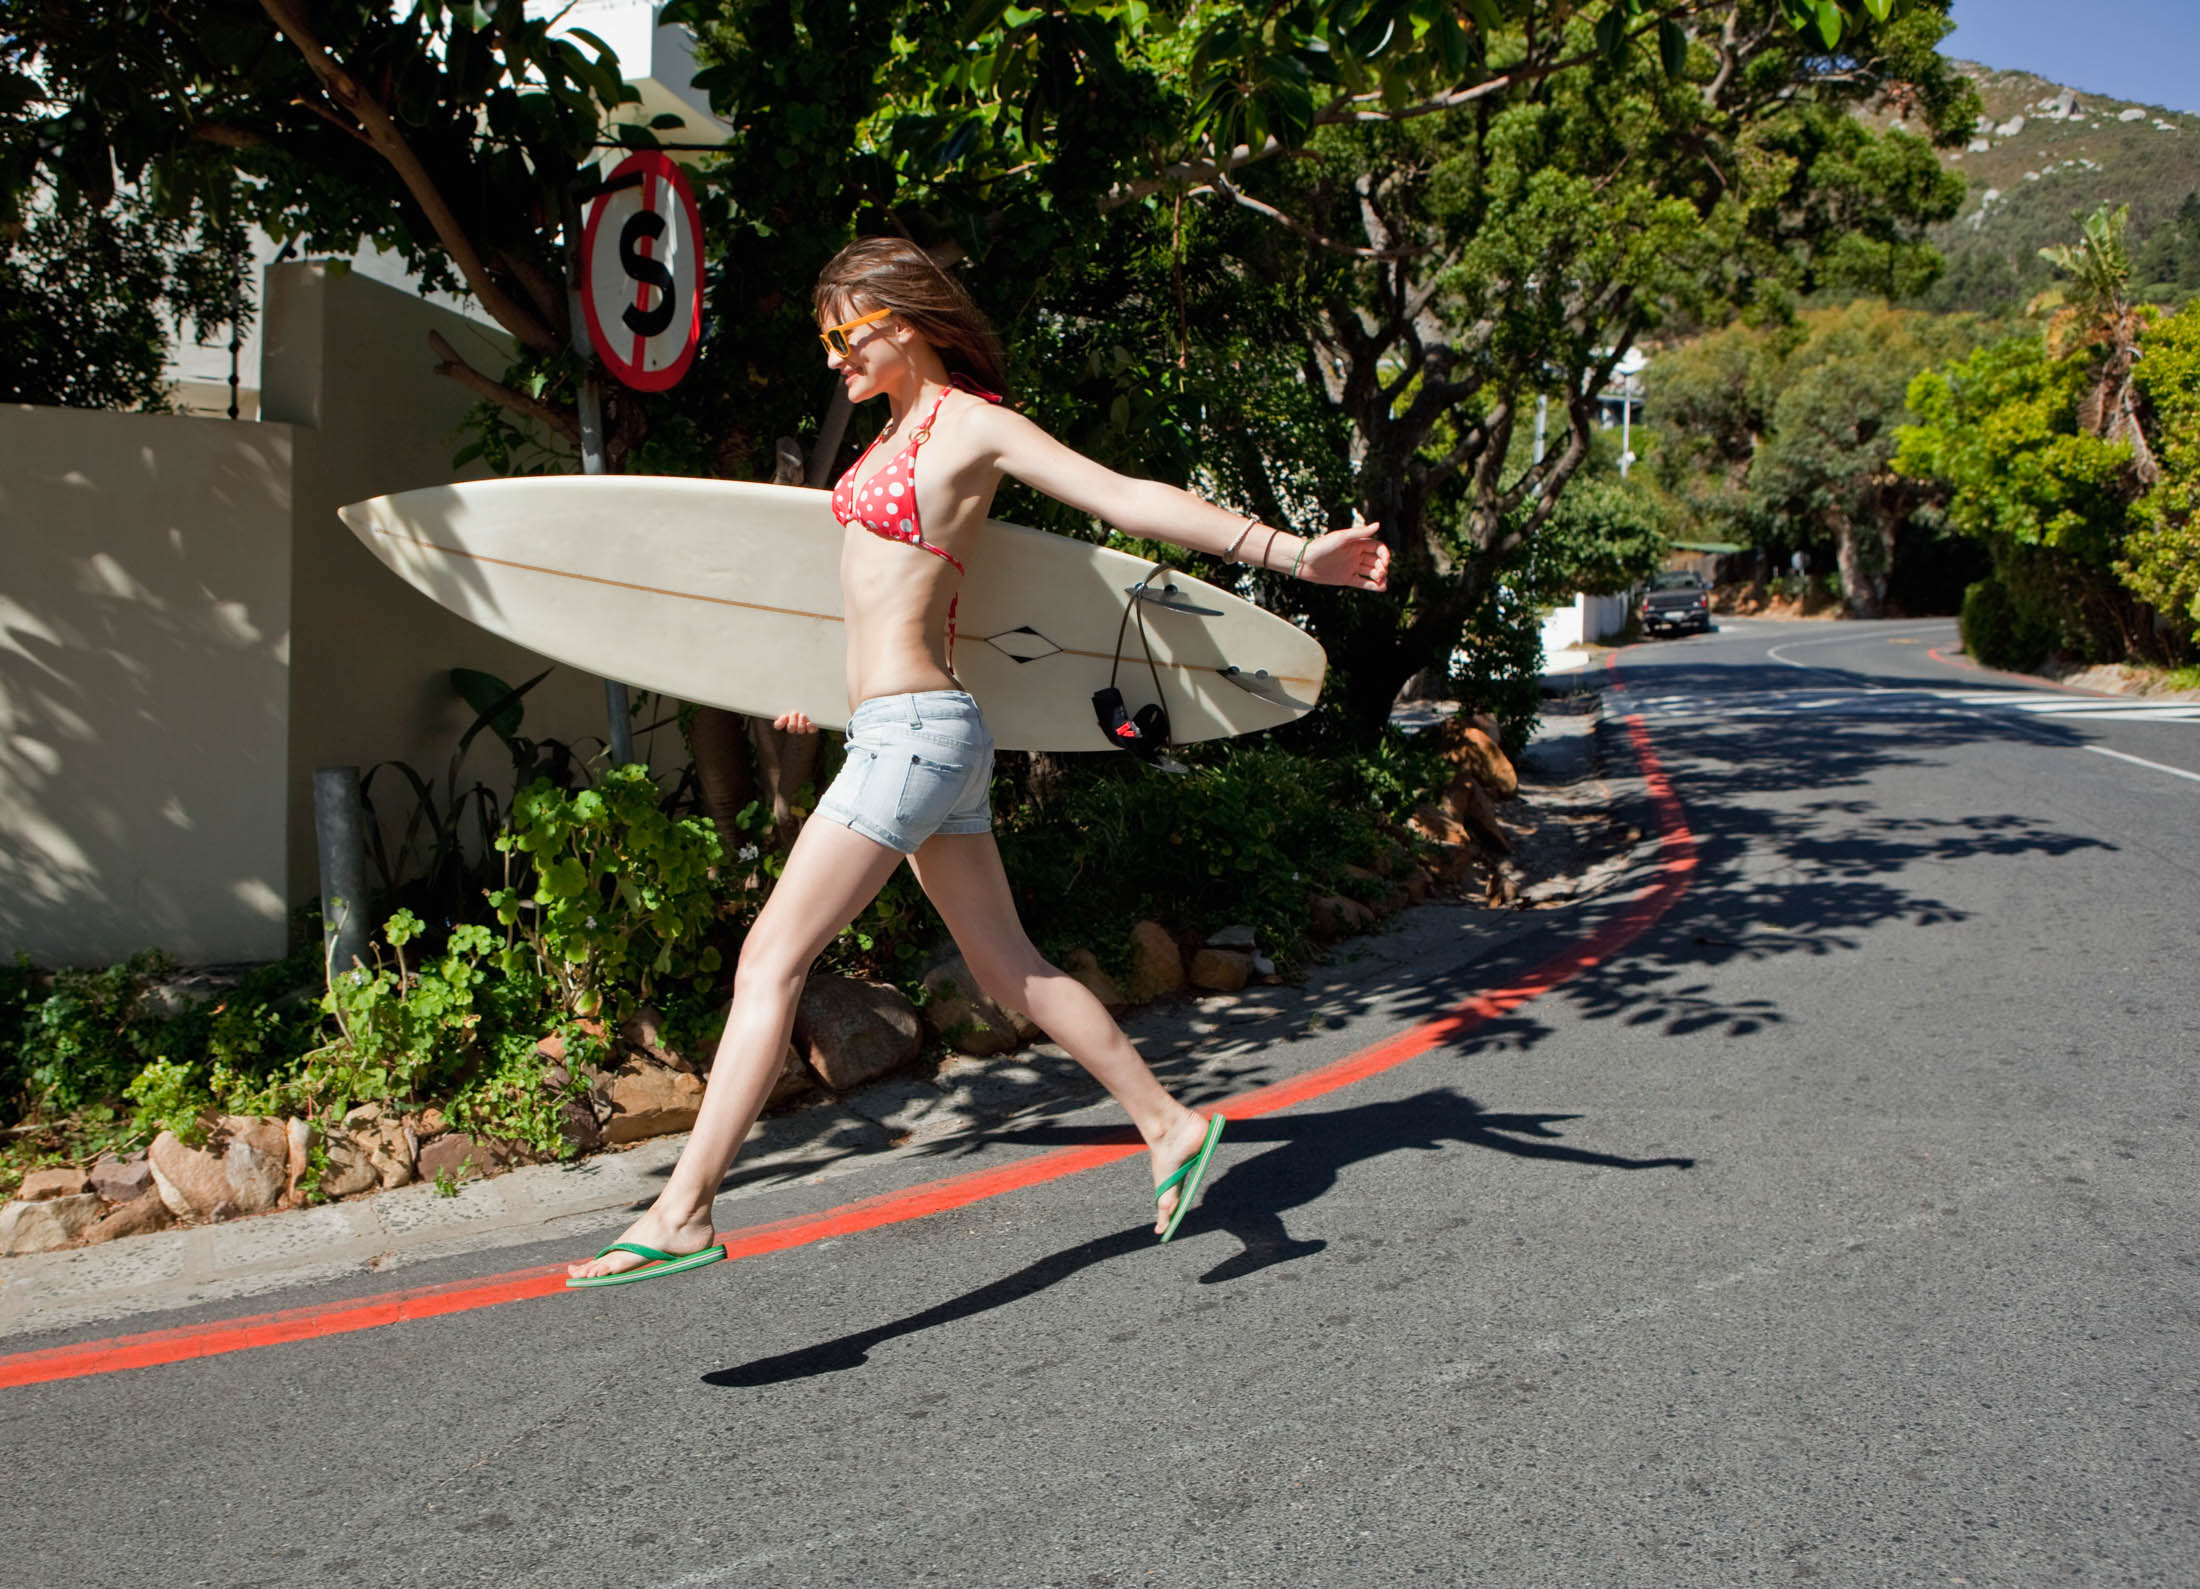 Eine junge Frau in einem roten Bikinioberteil und Jeansshorts trägt ein Surfbrett, während sie in der Nähe eines Stoppschildes eine Straße überquert, im Hintergrund ist üppiges Grün zu sehen. © Fotografie Tomas Rodriguez